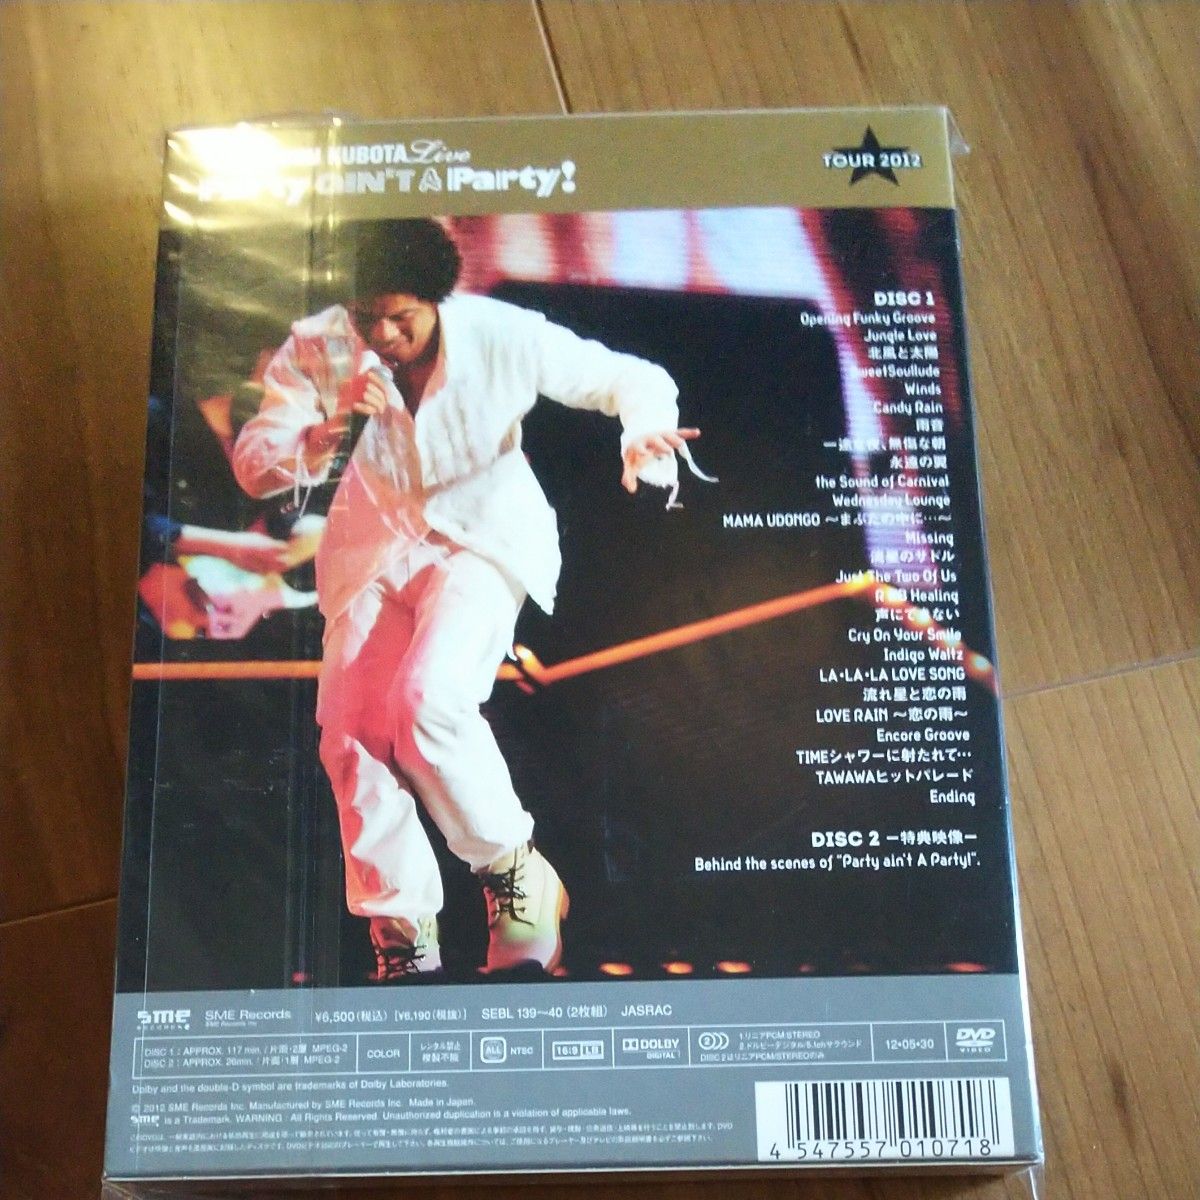 25th Anniversary Toshinobu Kubota Concert Tour 2012“Party aint A